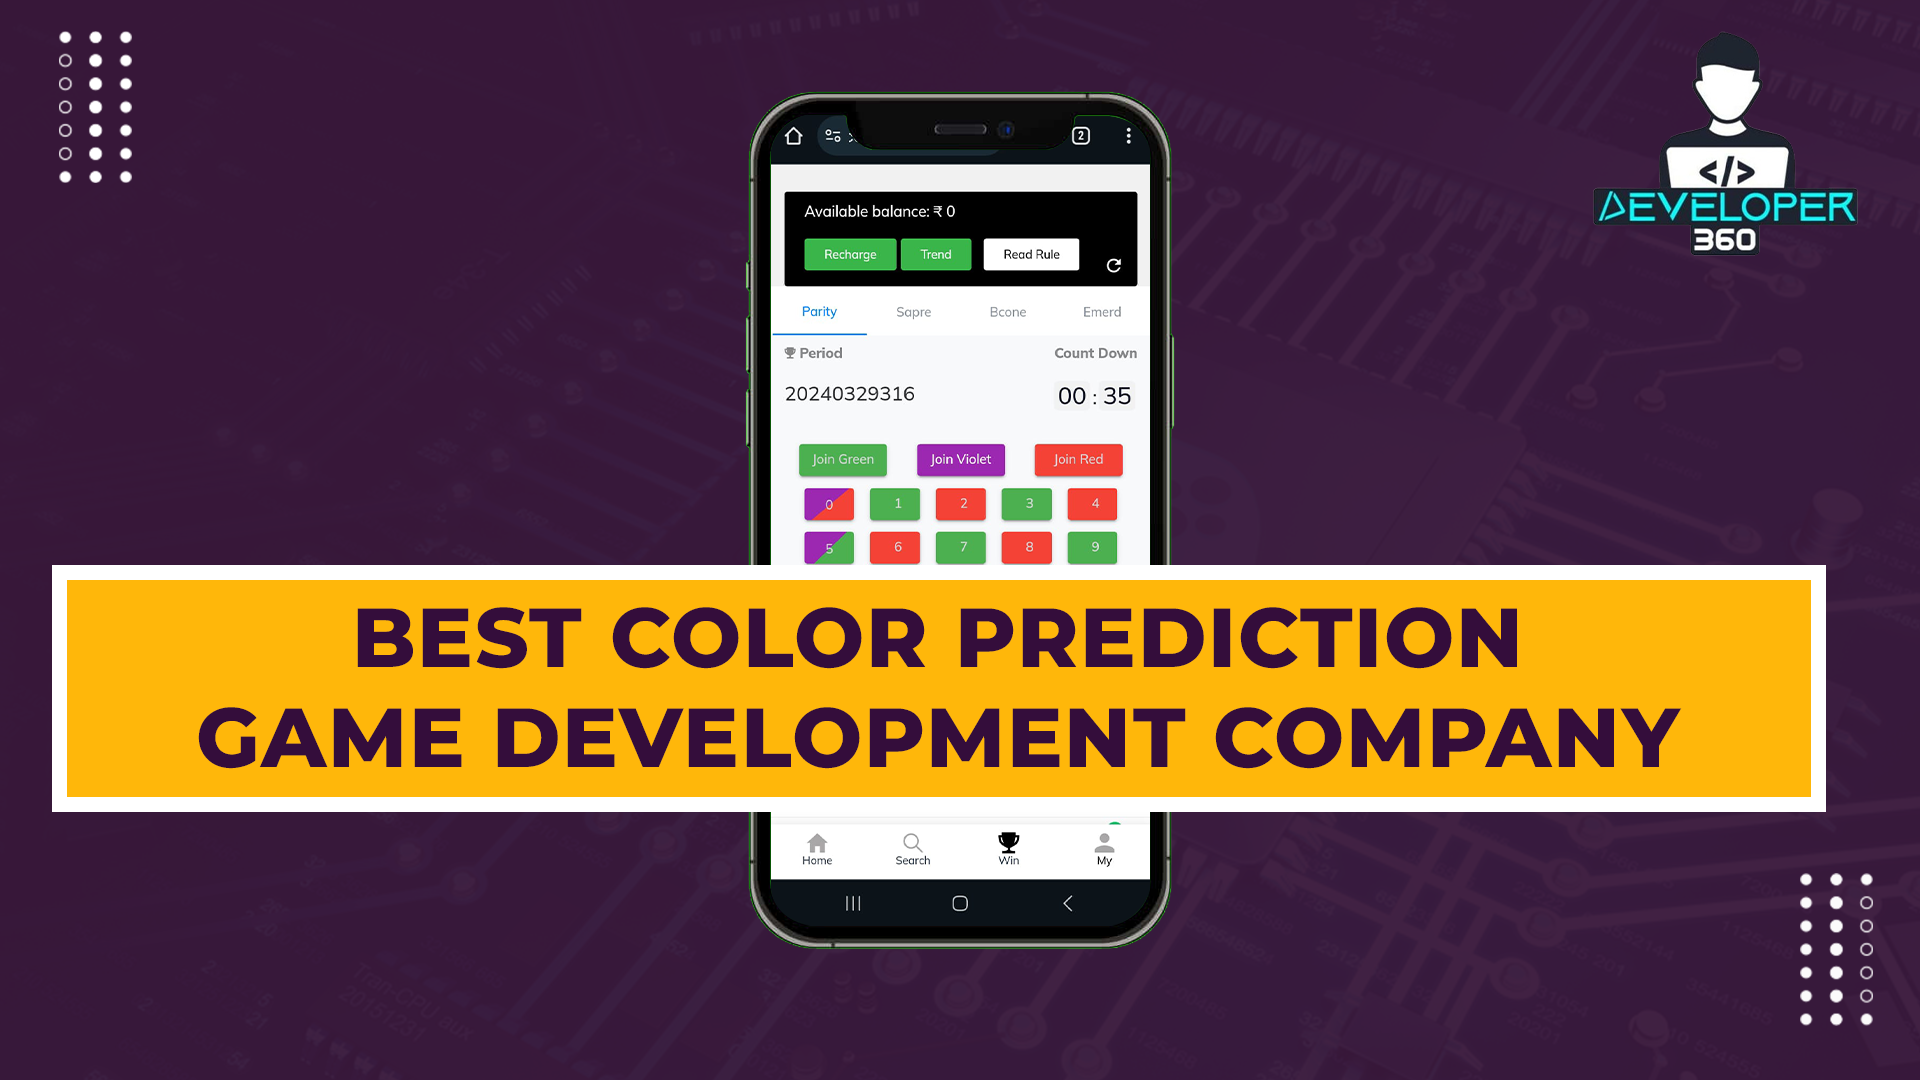 Best Color Prediction Game Development Company - Developer 360